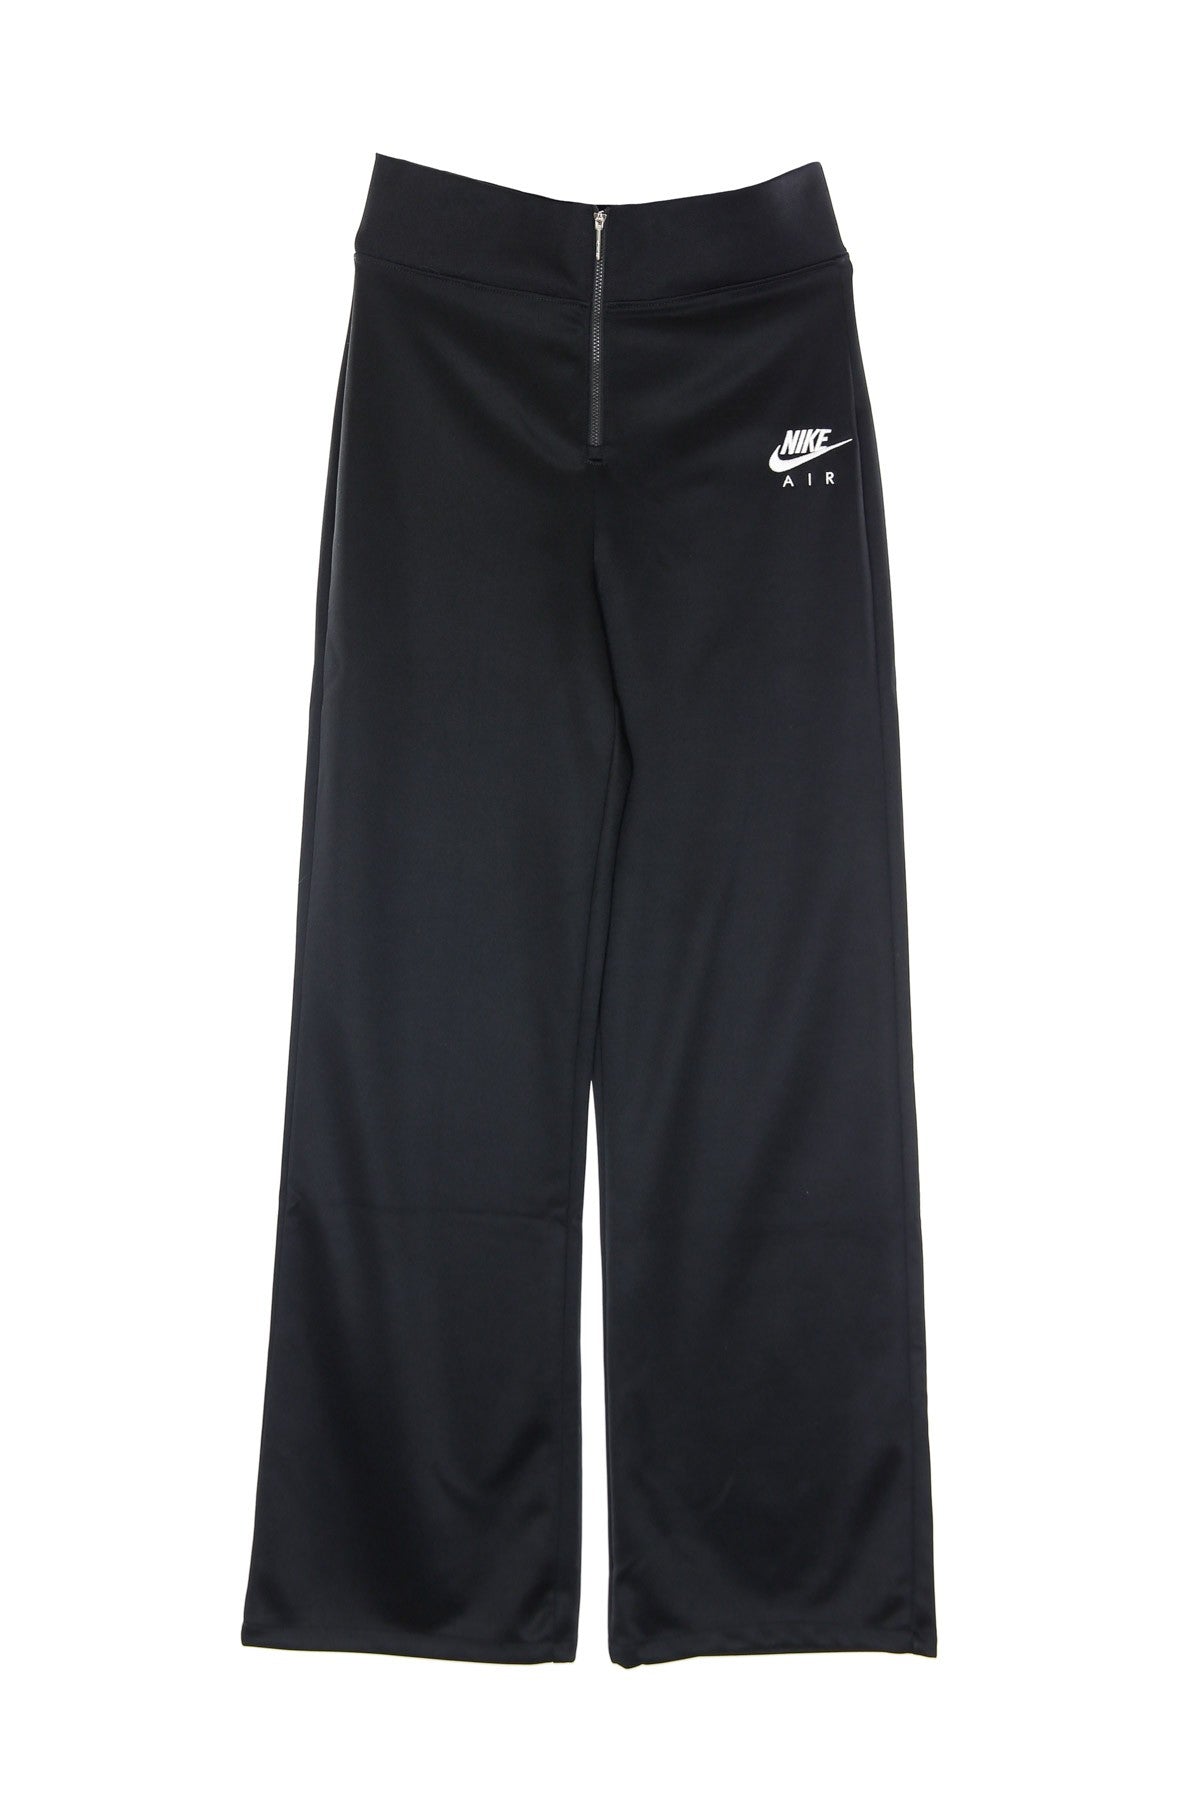 W Sportswear Air Pant Poly Knit Women's Long Pants Black/white